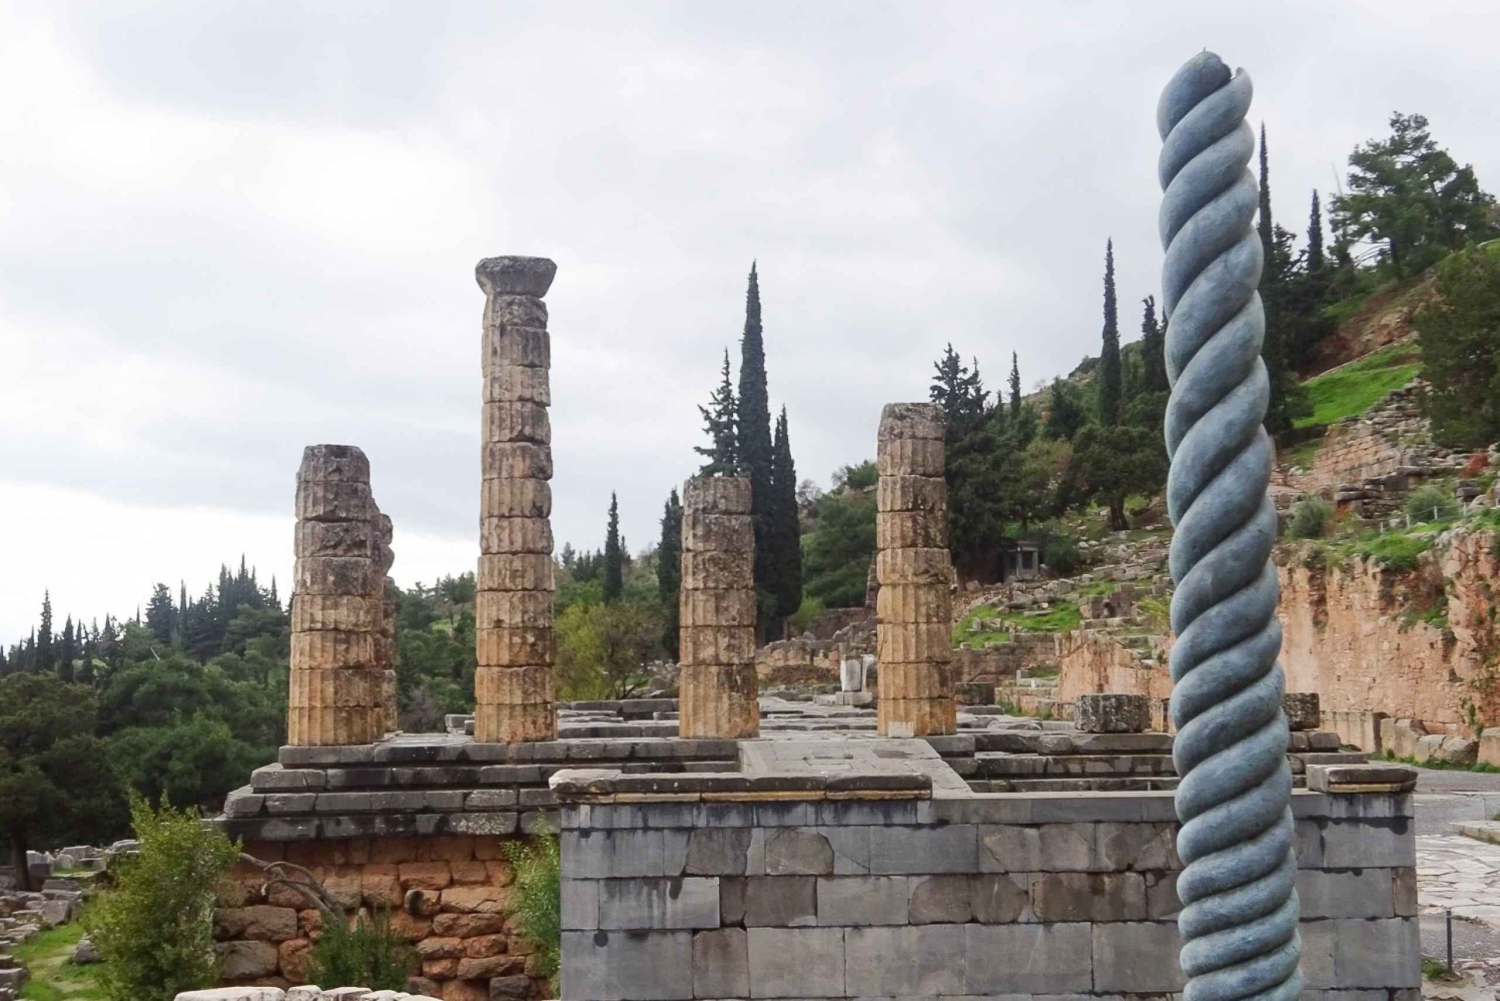 Delphi 2-daagse tour vanuit Athene met overnachting in 4-sterrenhotel